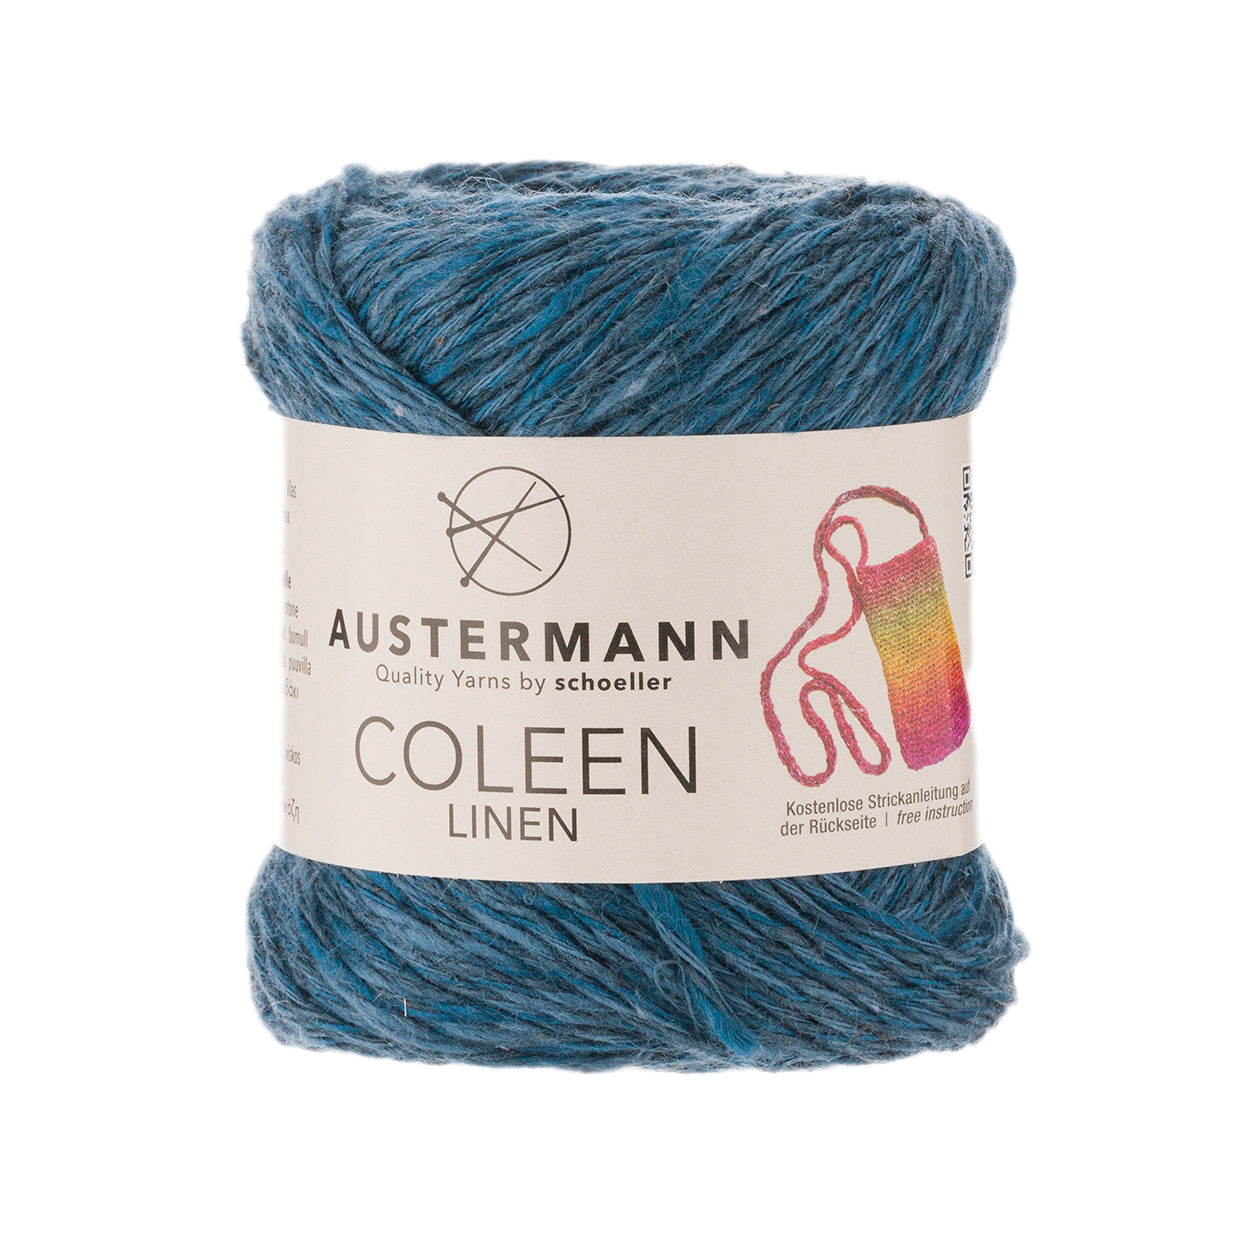 Coleen Linen 50g, 90313, Farbe 6, indigo